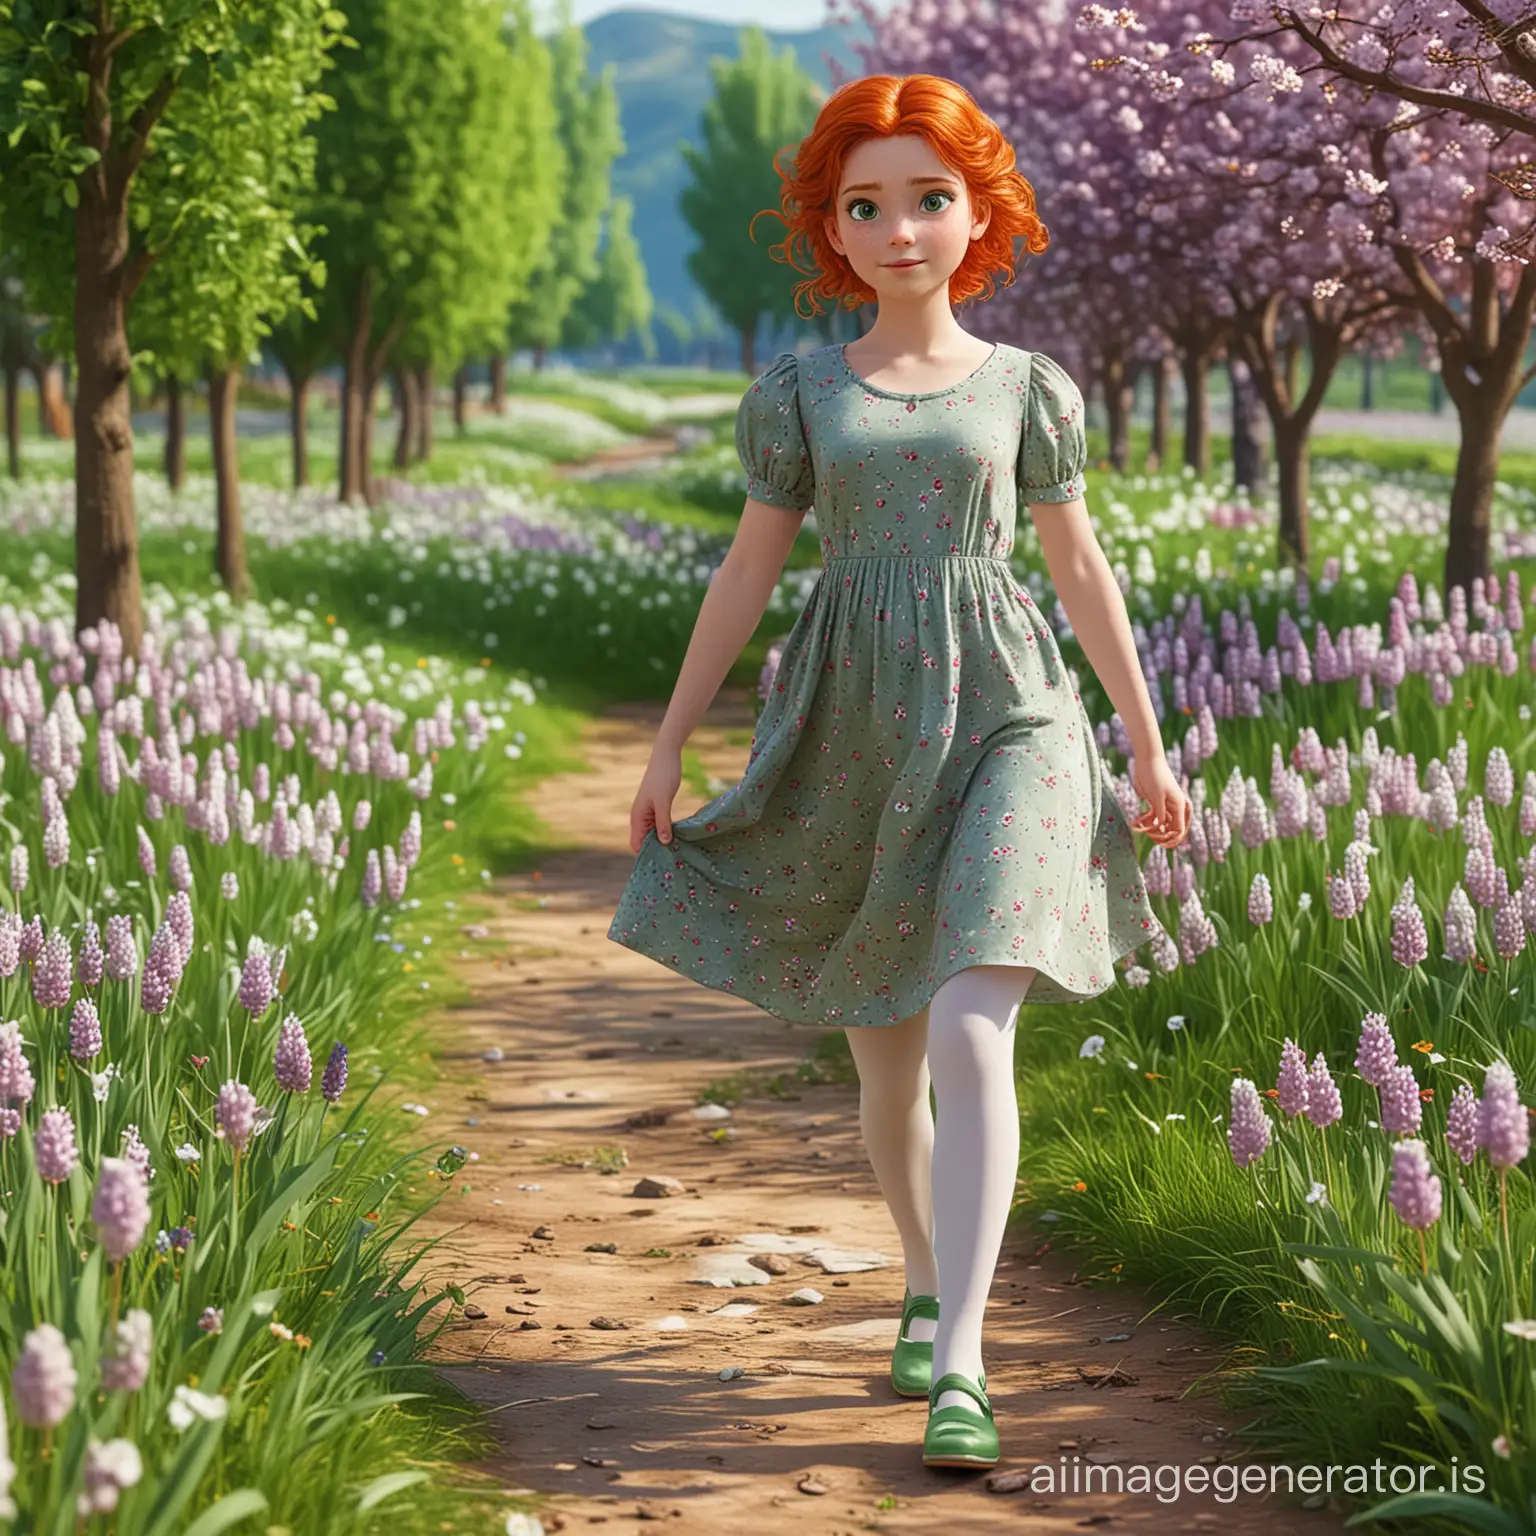 3d графіка: весняний пейзаж та дівчинка, яка має зелені очі, руде волосся одягнена в довгу зелену сукню з короткими рукавами, білі колготки, фіолетові туфелькі